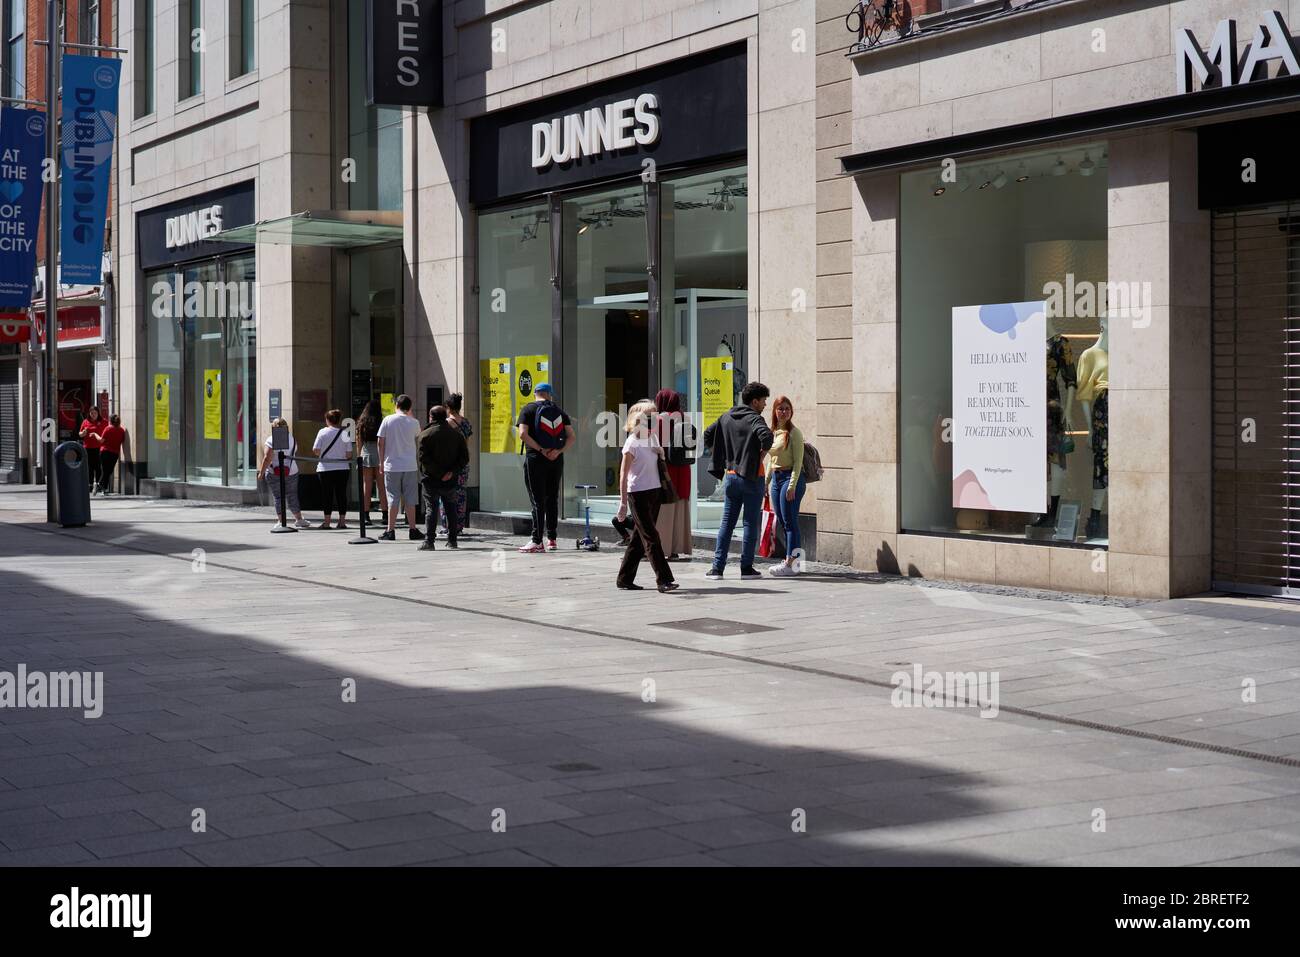 Le persone formano una coda per i negozi di Dunnes nella città di Dublino, Irlanda, durante la pandemia globale del coronavirus. Foto Stock